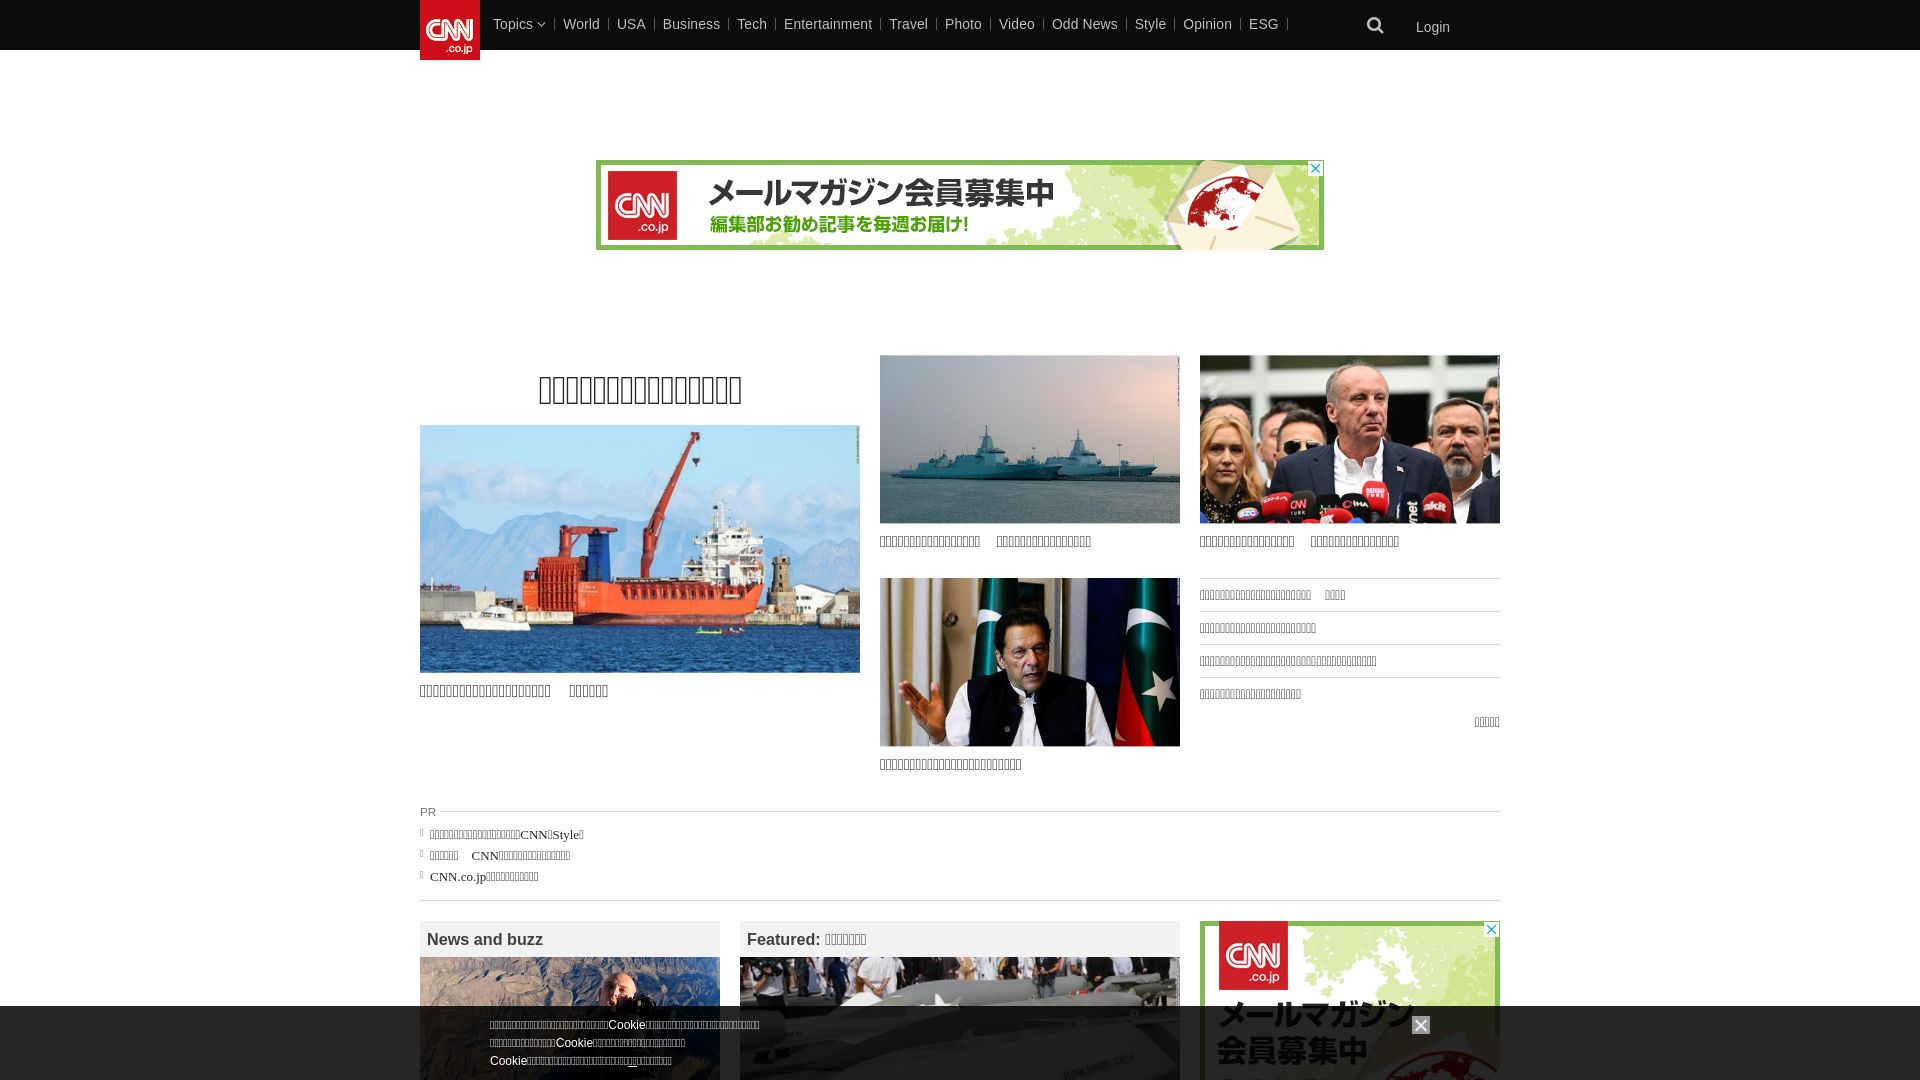 Stato del sito web cnn.co.jp è   ONLINE